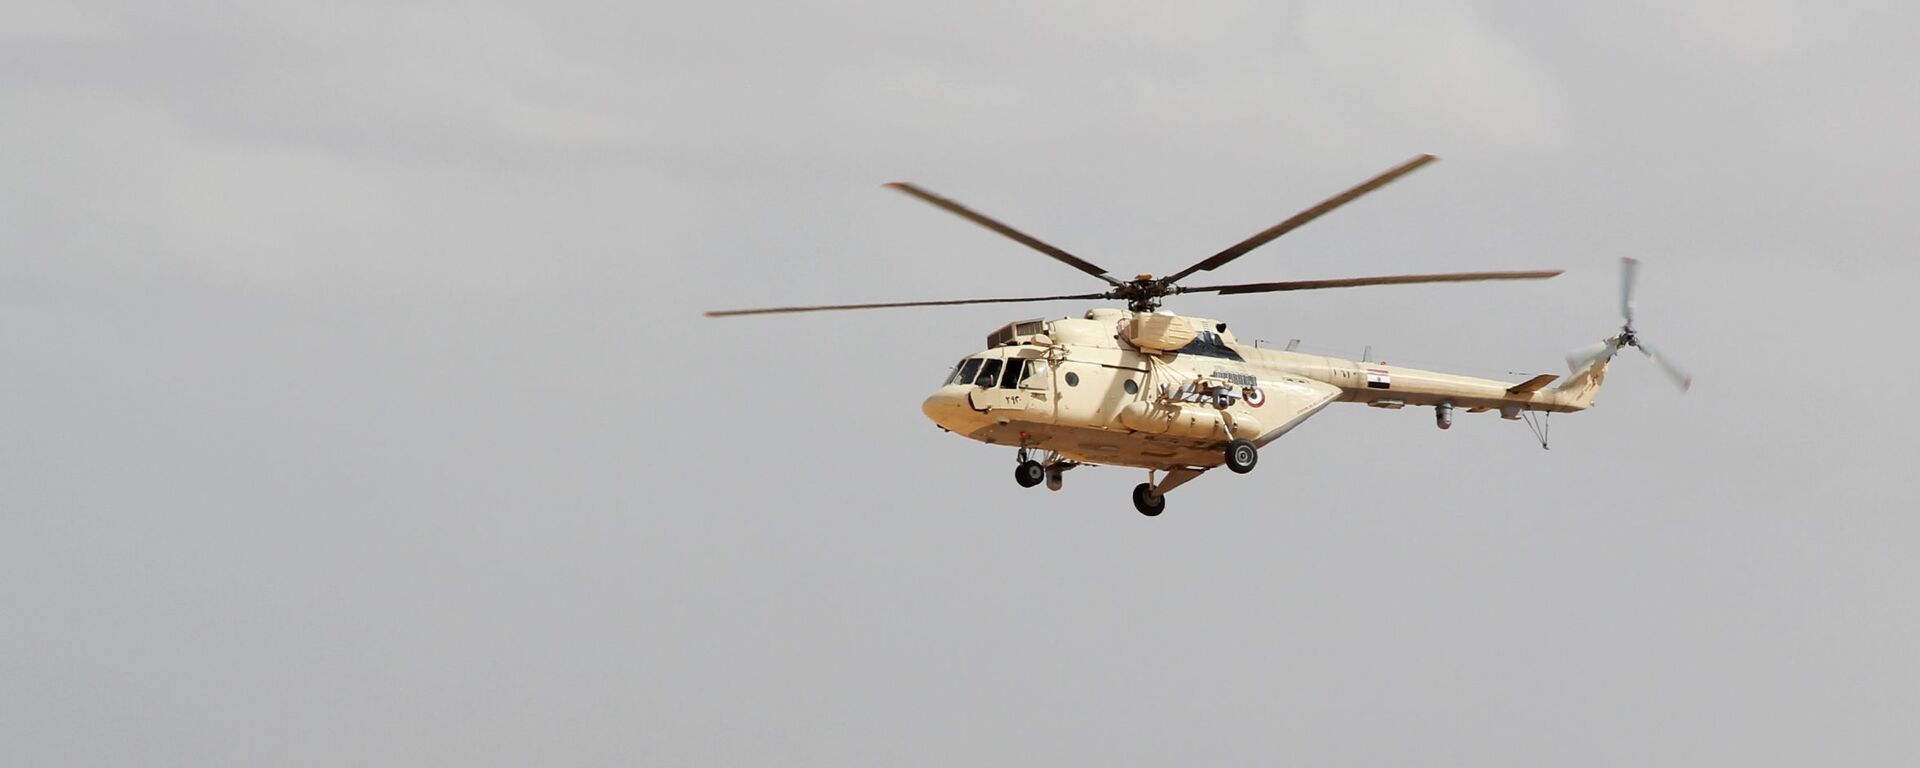 مروحية Mi-17 تابعة للقوات المسلحة المصرية - الجيش المصري - سبوتنيك عربي, 1920, 01.03.2020